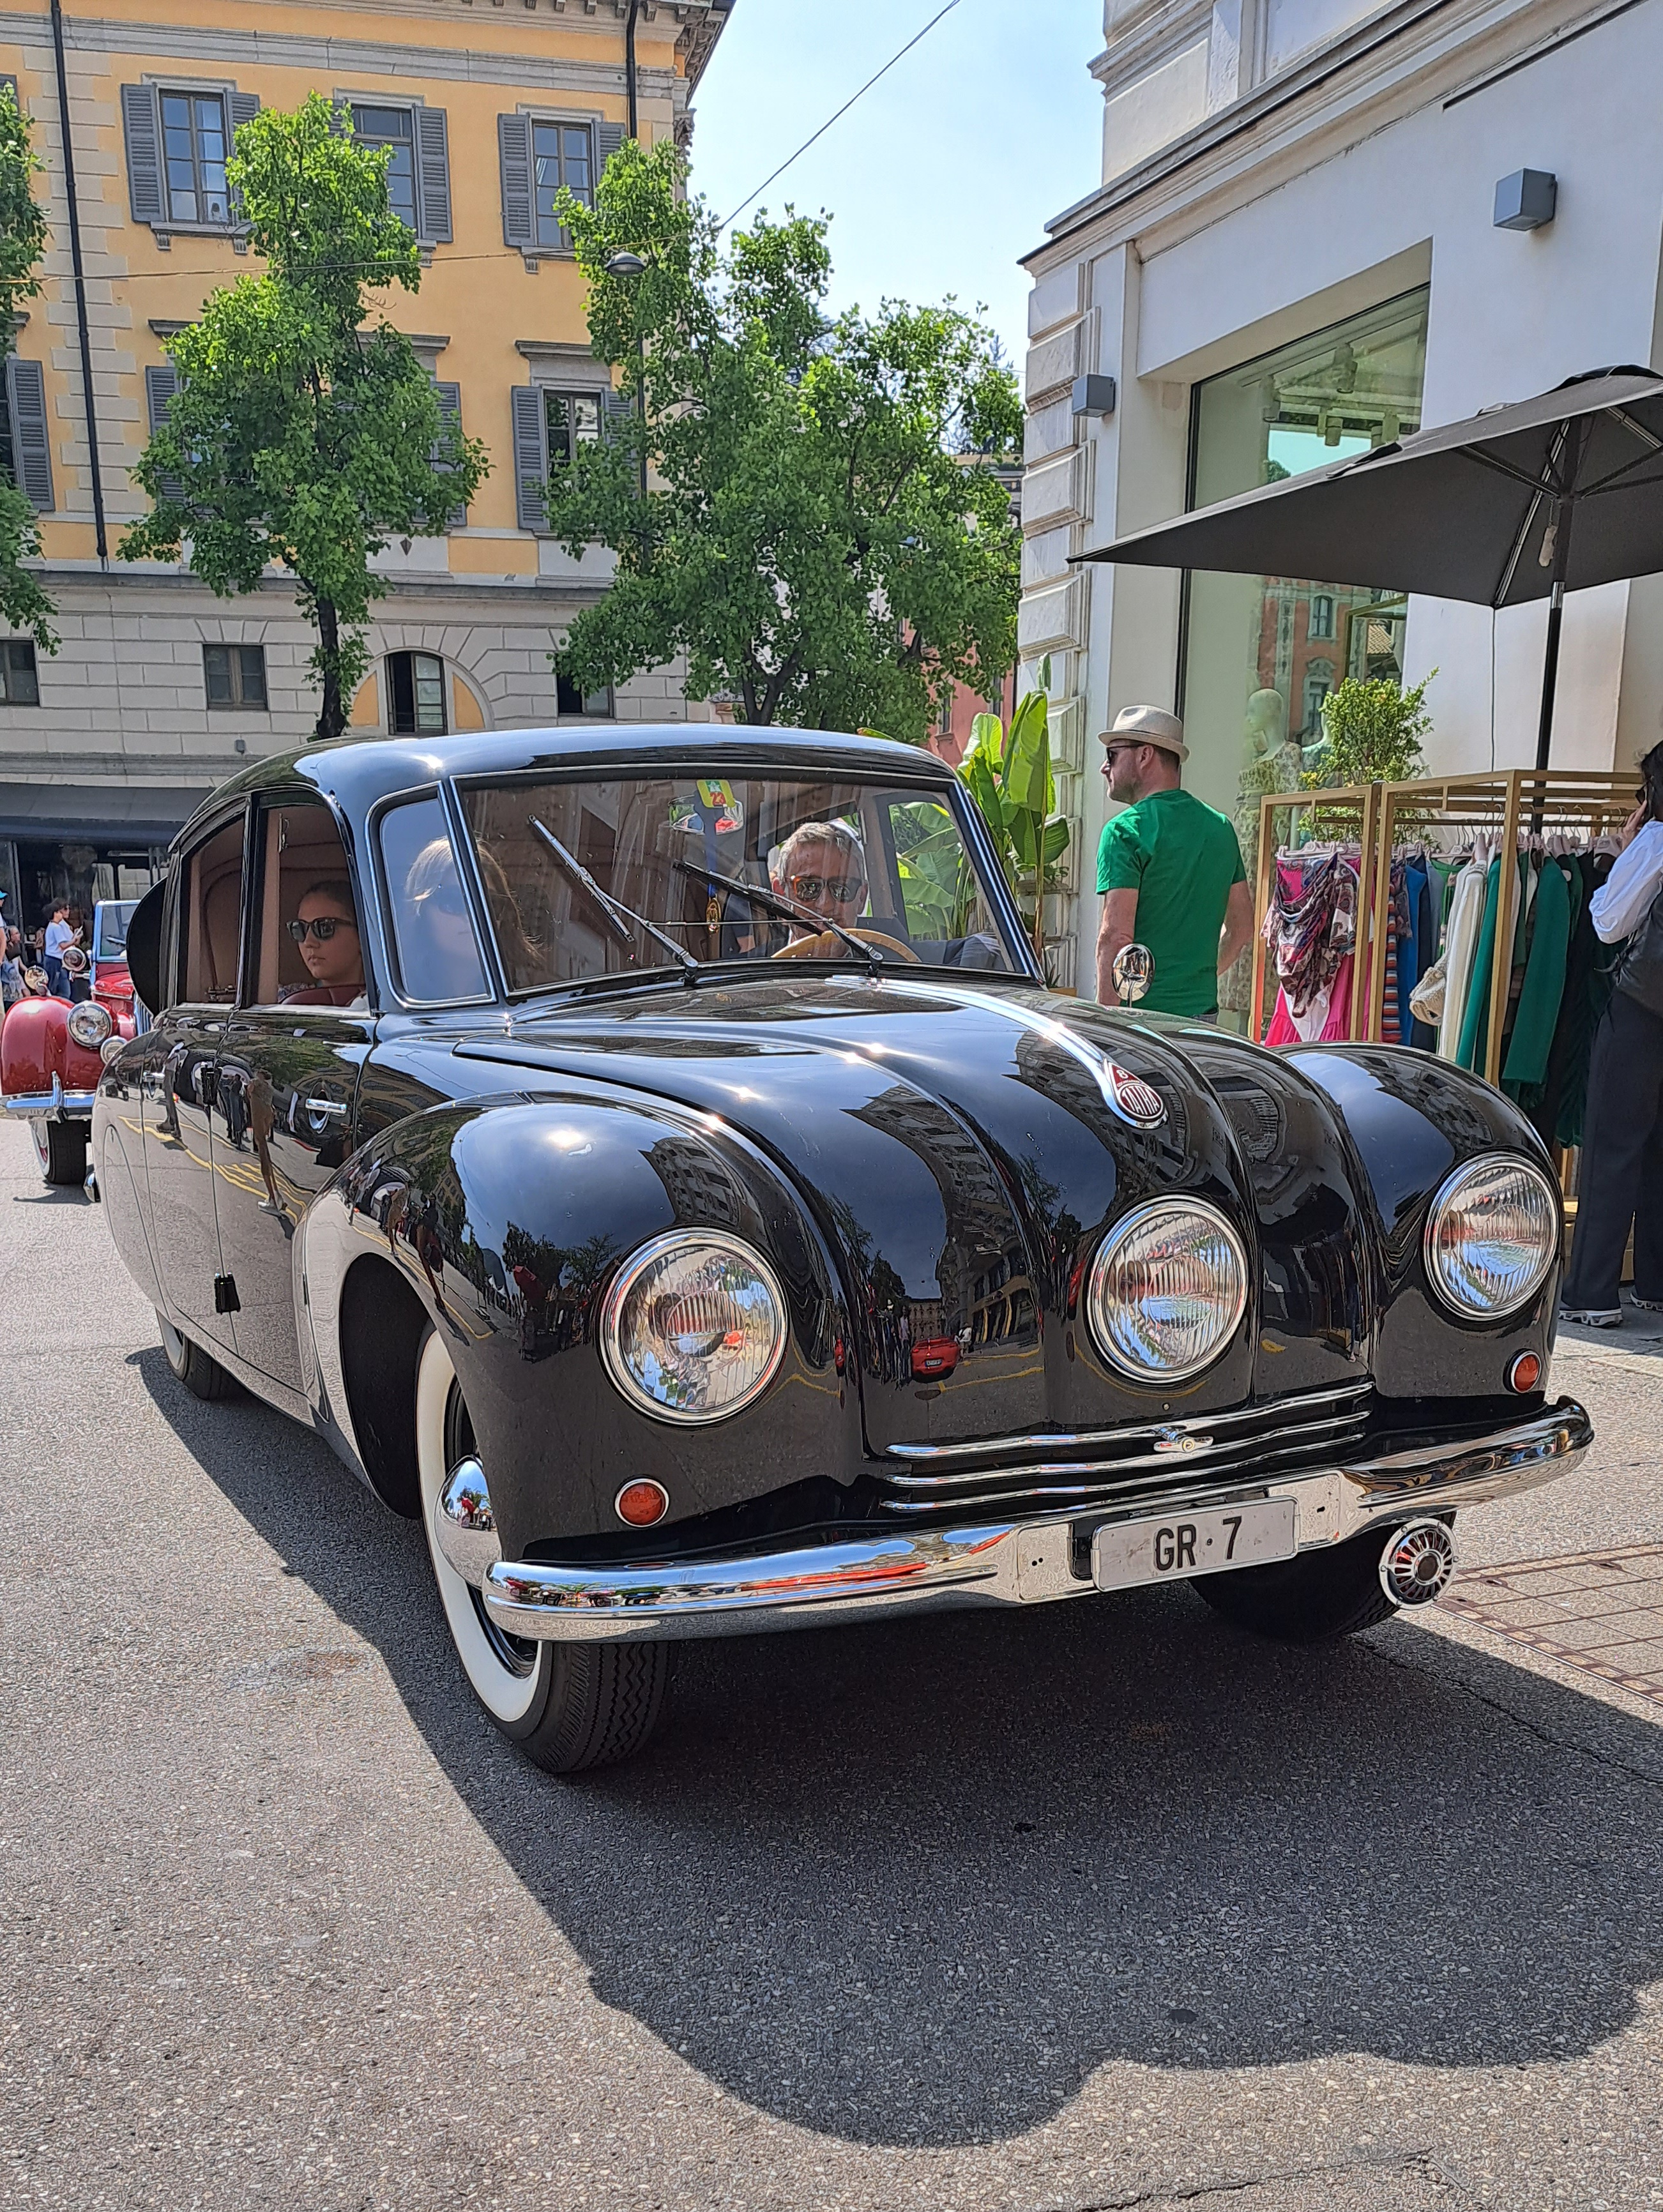 tatra_luganoelegance SemanalClásico - Revista online de coches clásicos, de colección y sport - classic cars